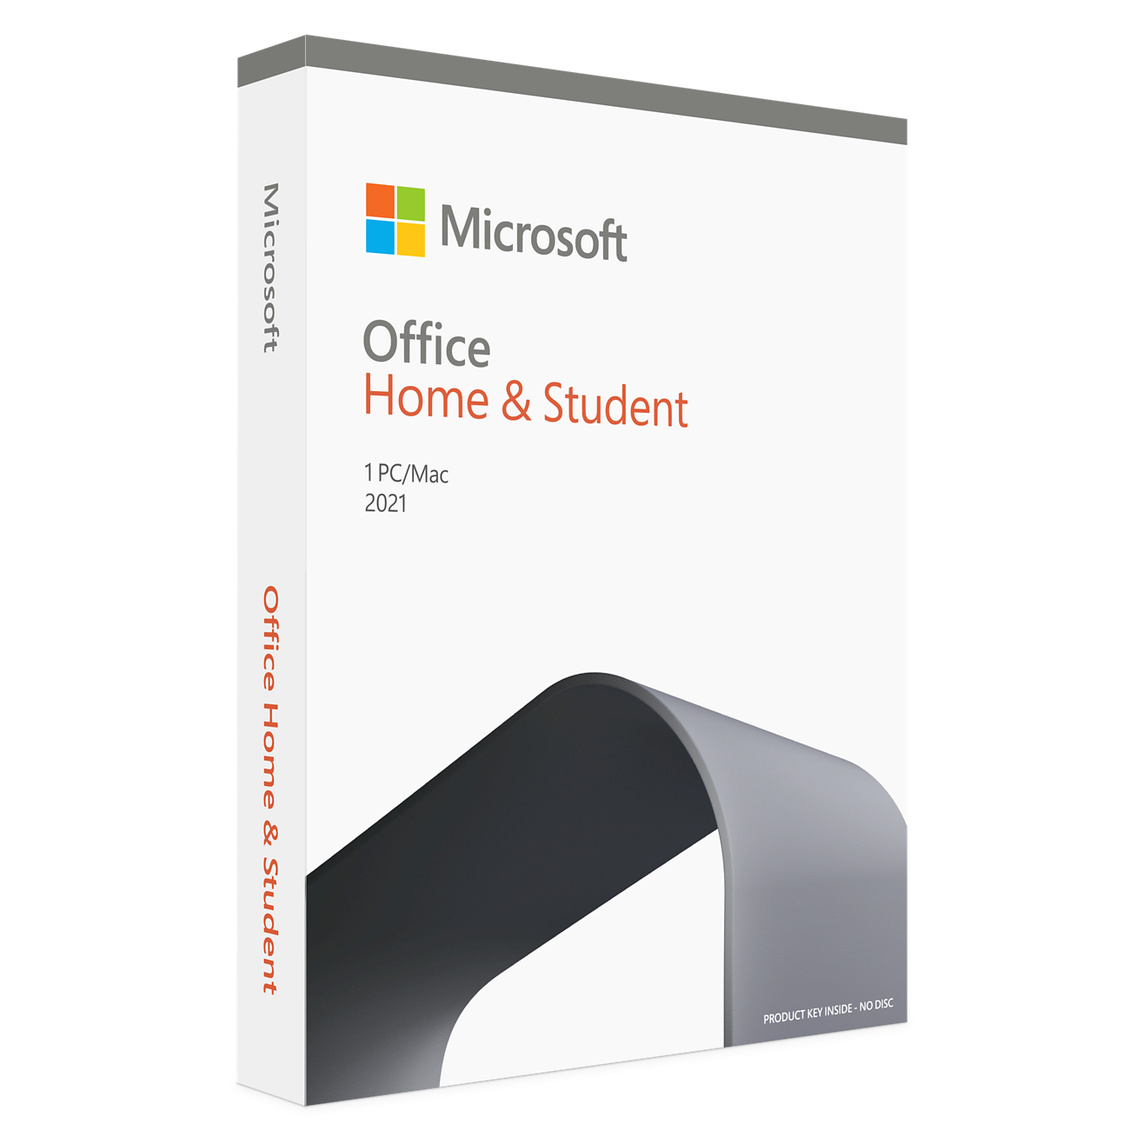 Microsoft Office 家用及學生版 2021 提供傳統型 Office app 與電子郵件，適合想要安裝在一部 Mac 上的家庭及學生使用。